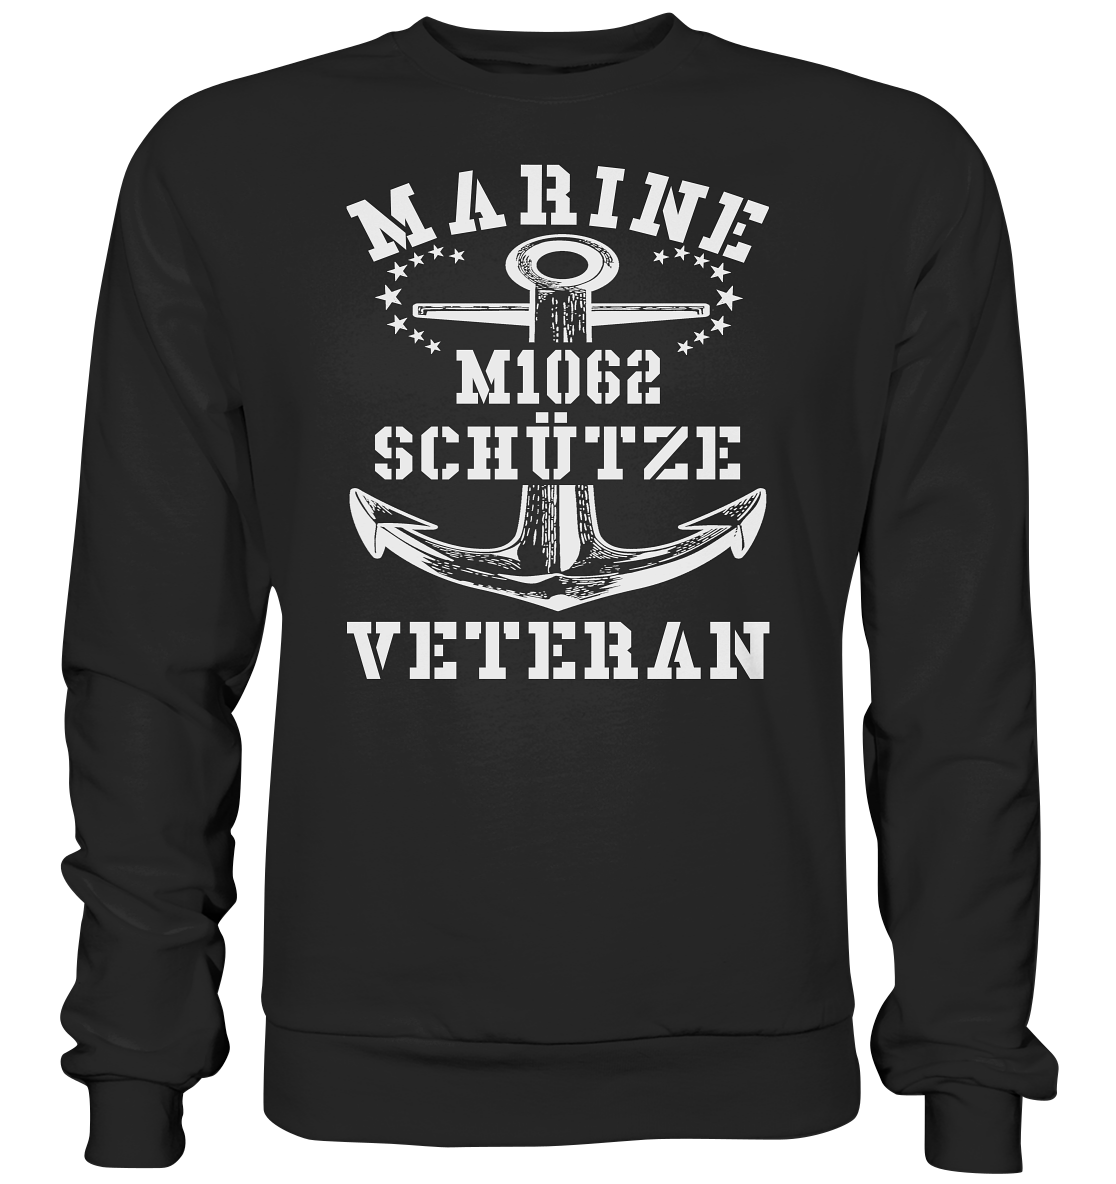 SM-Boot M1062 SCHÜTZE Marine Veteran - Premium Sweatshirt